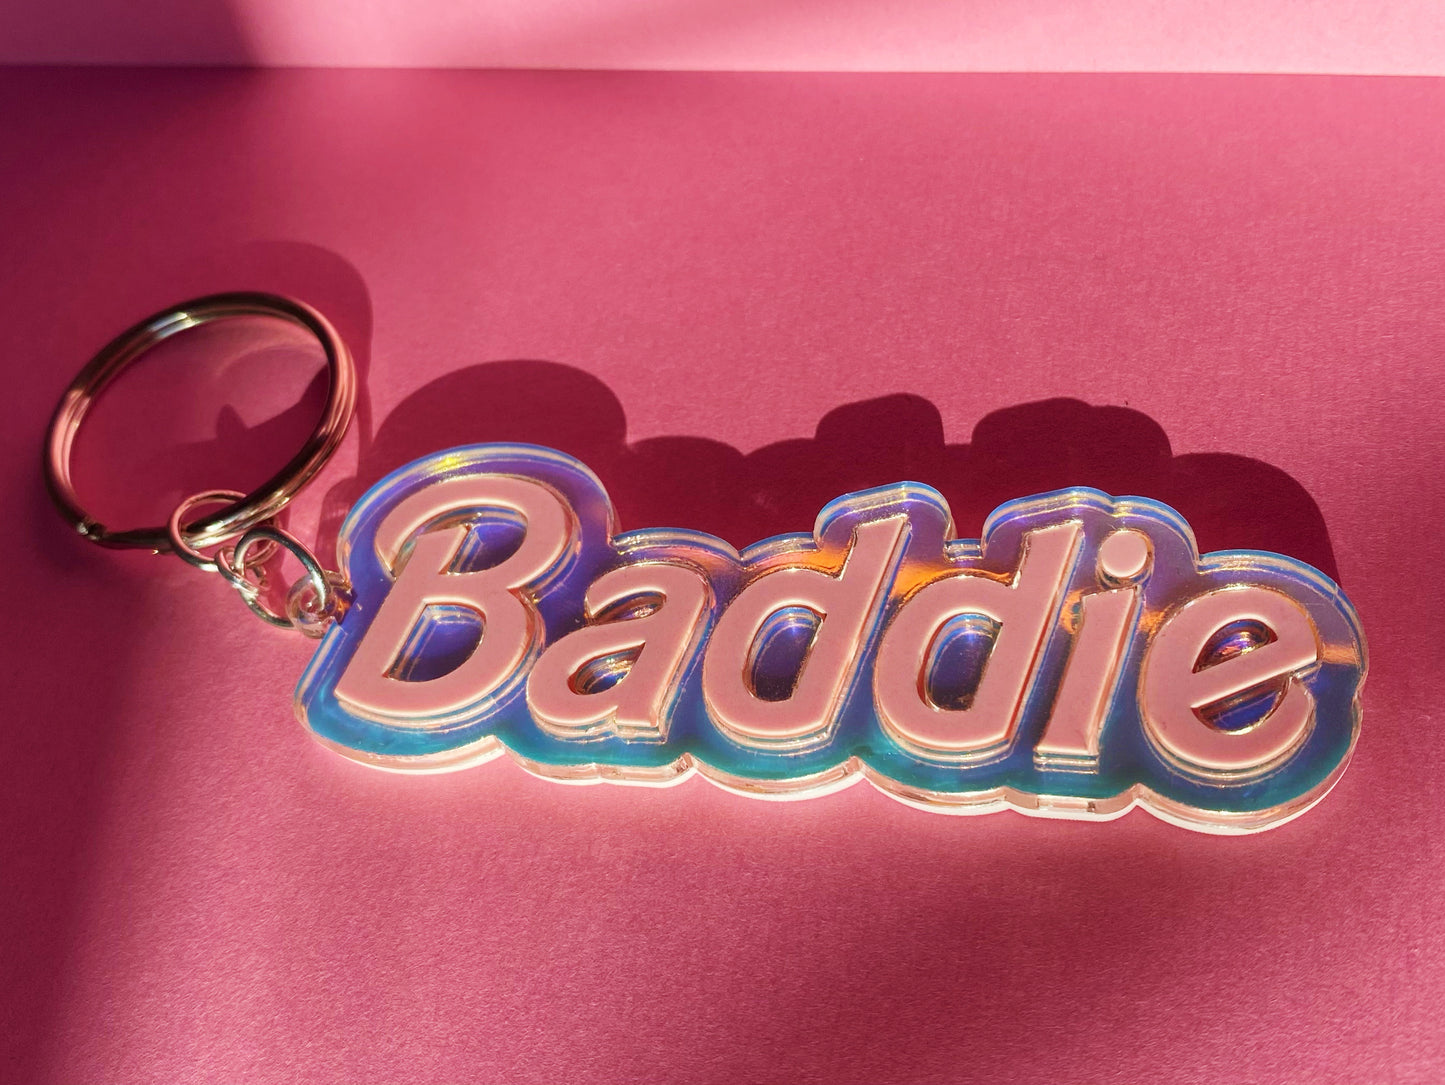 Baddie - Keychain